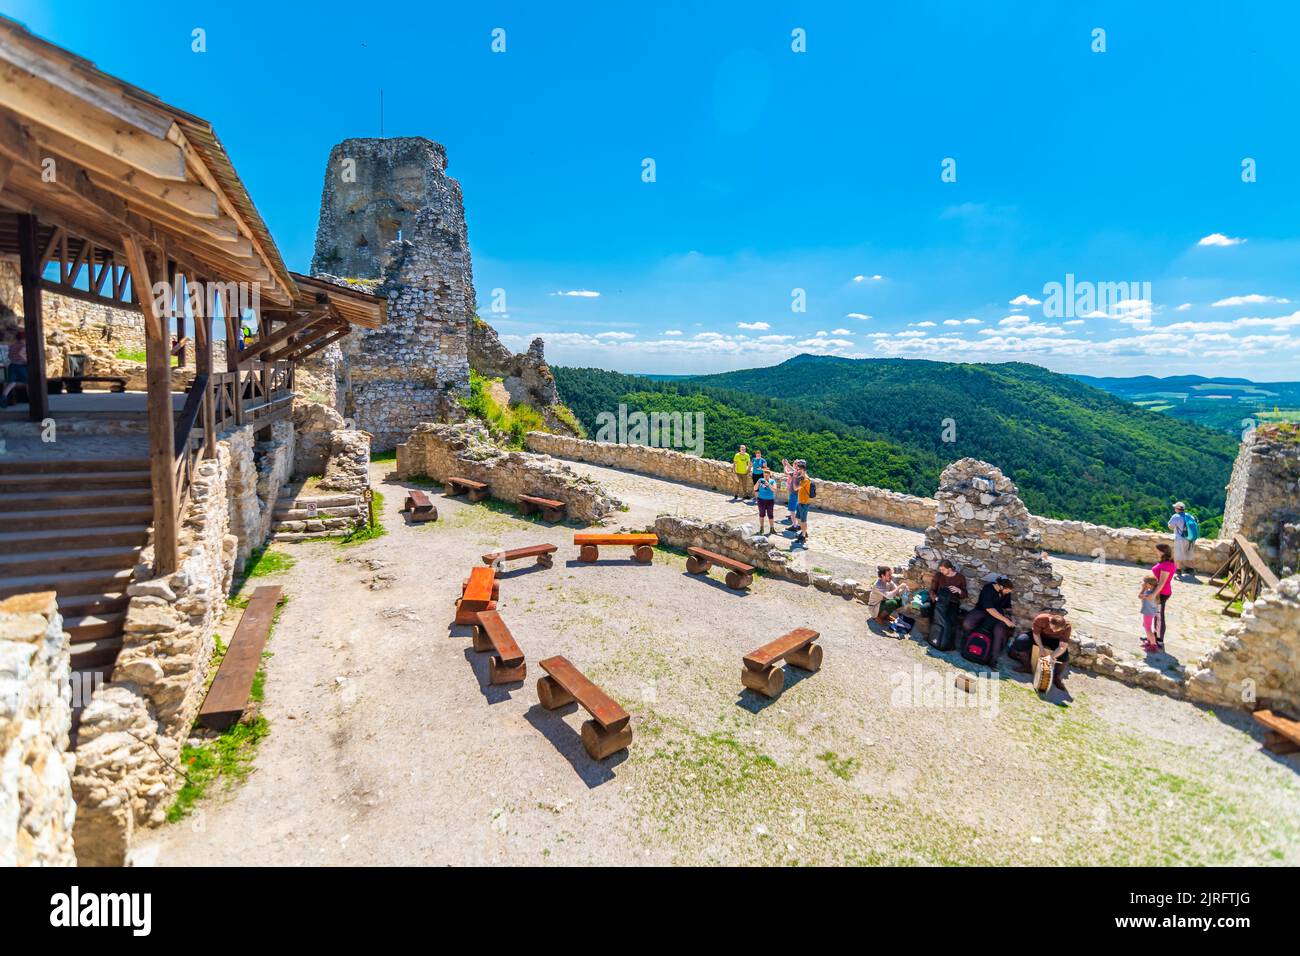 Cachtice, Slovacchia - 4,7.2020: I turisti sono in visita rovina del castello medievale Cachtice. Famoso castello conosciuto dalla leggenda circa la signora di sangue Bathory. Summe Foto Stock